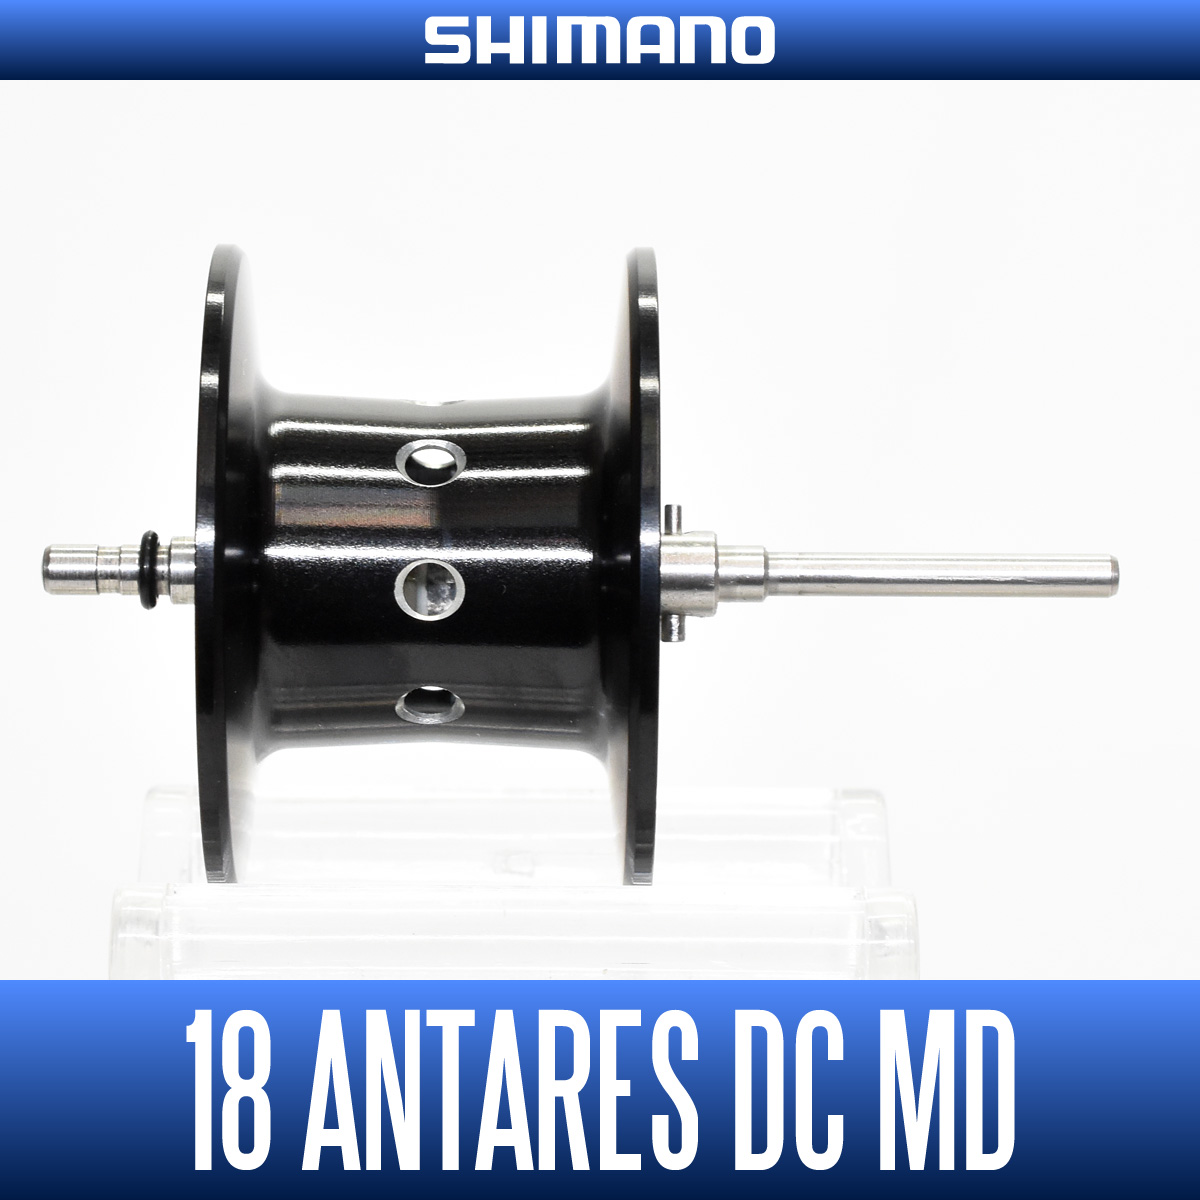 DC L DC HG 16 DC HG L Shimano CERAMIC #7 Super Tune bearings ANTARES DC 